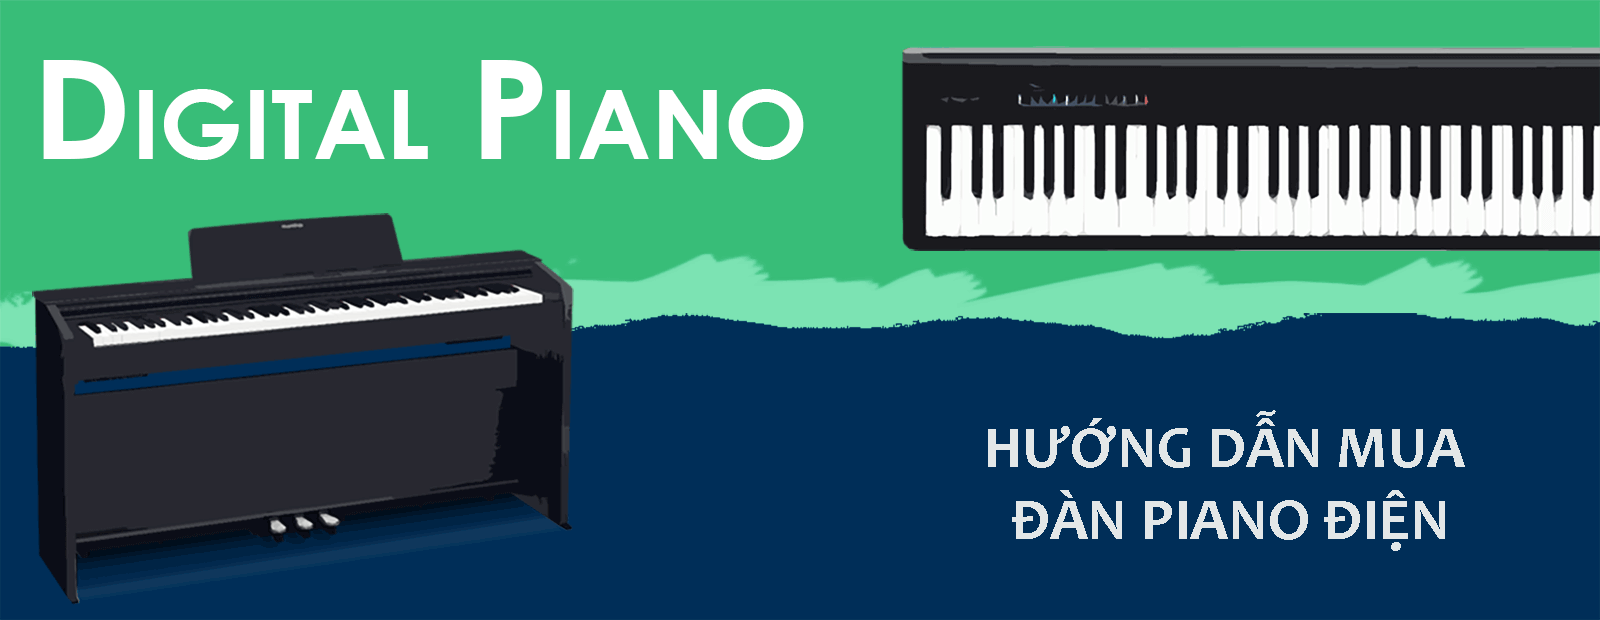 Đàn piano điện có tốt không, ưu và nhược điểm của đàn piano điện